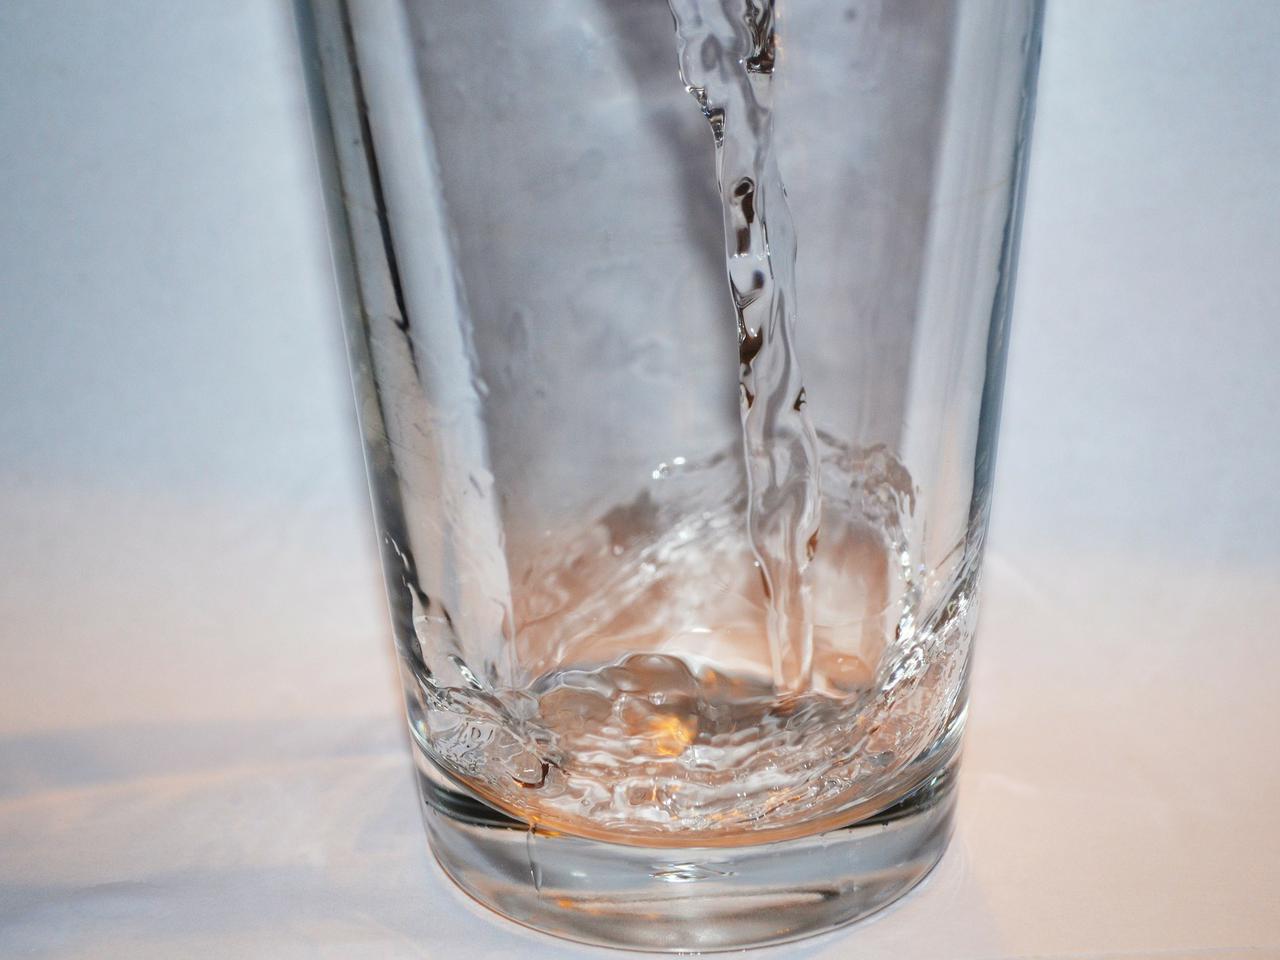 Zatrucie Warty: Poznaniacy boją się pić wodę z kranu [AUDIO, WIDEO]. Sprawdziliśmy, czy jest bezpieczna